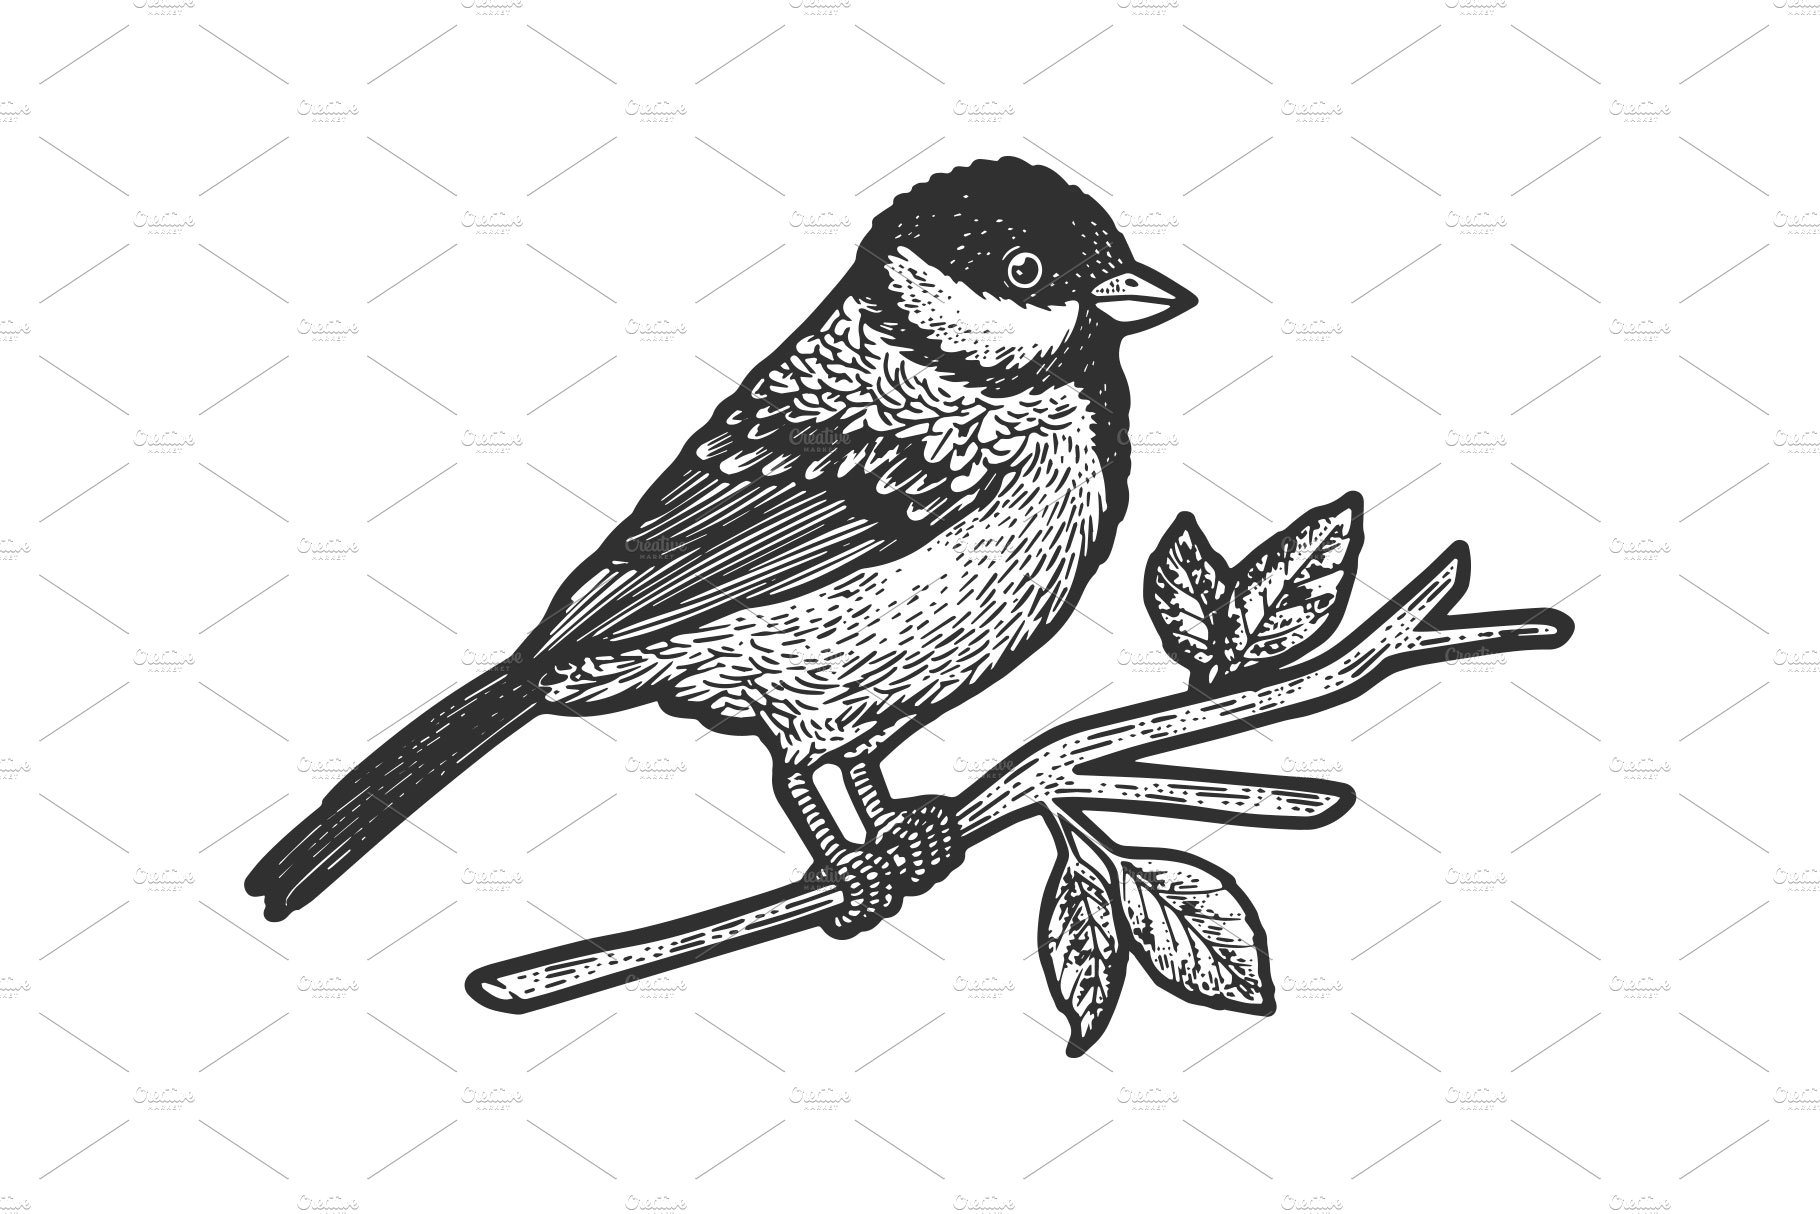 titmouse bird sketch vector cover image.